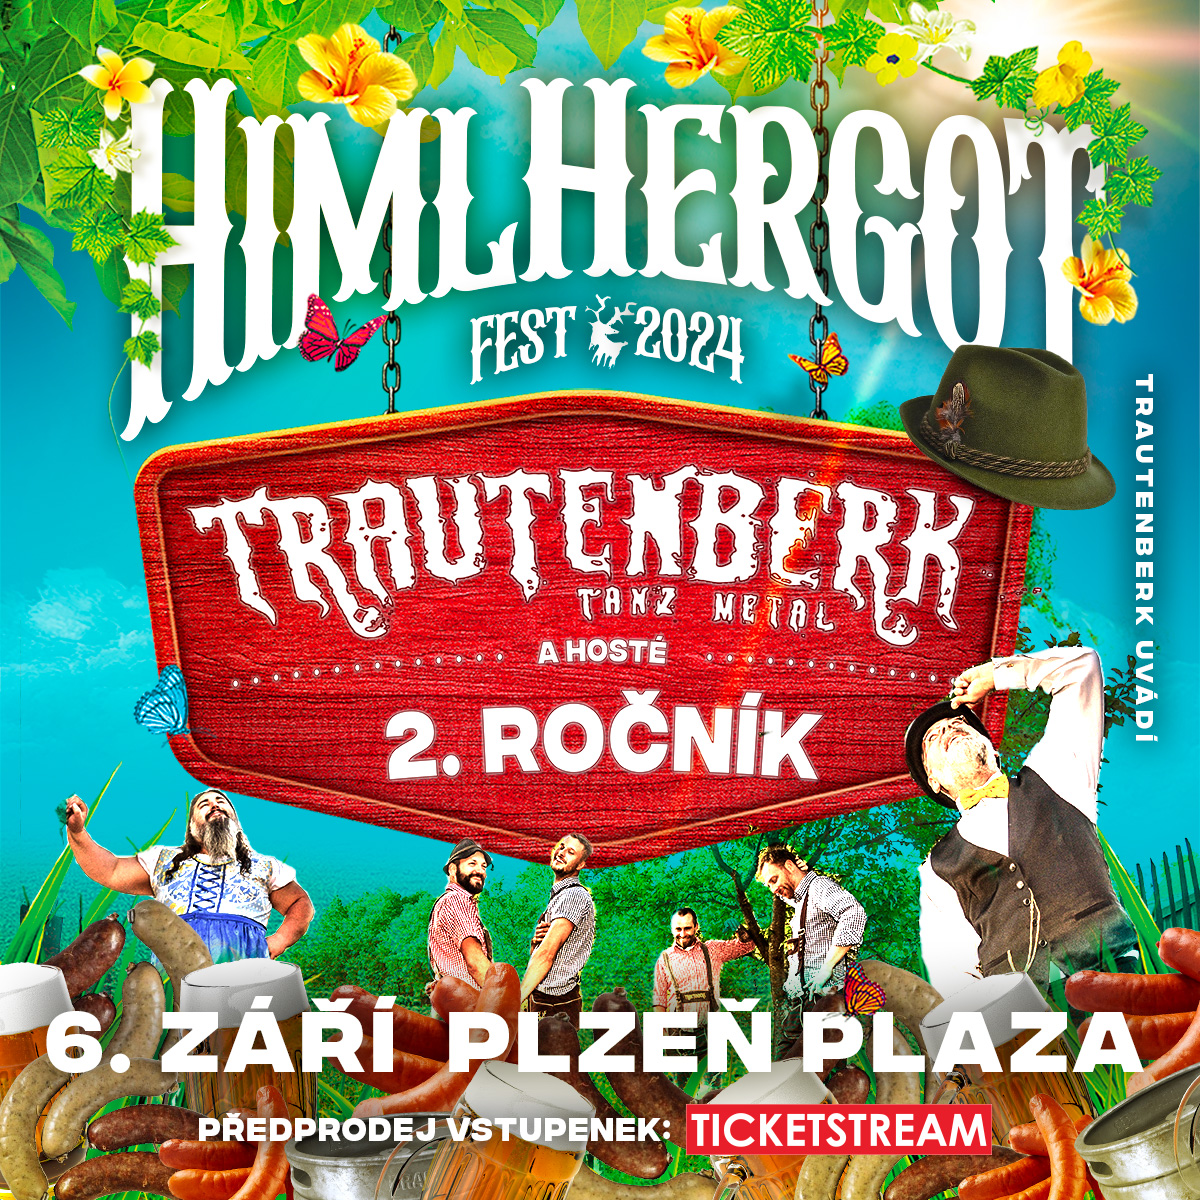 HimlHergotFest<br>Trautenberk a hosté